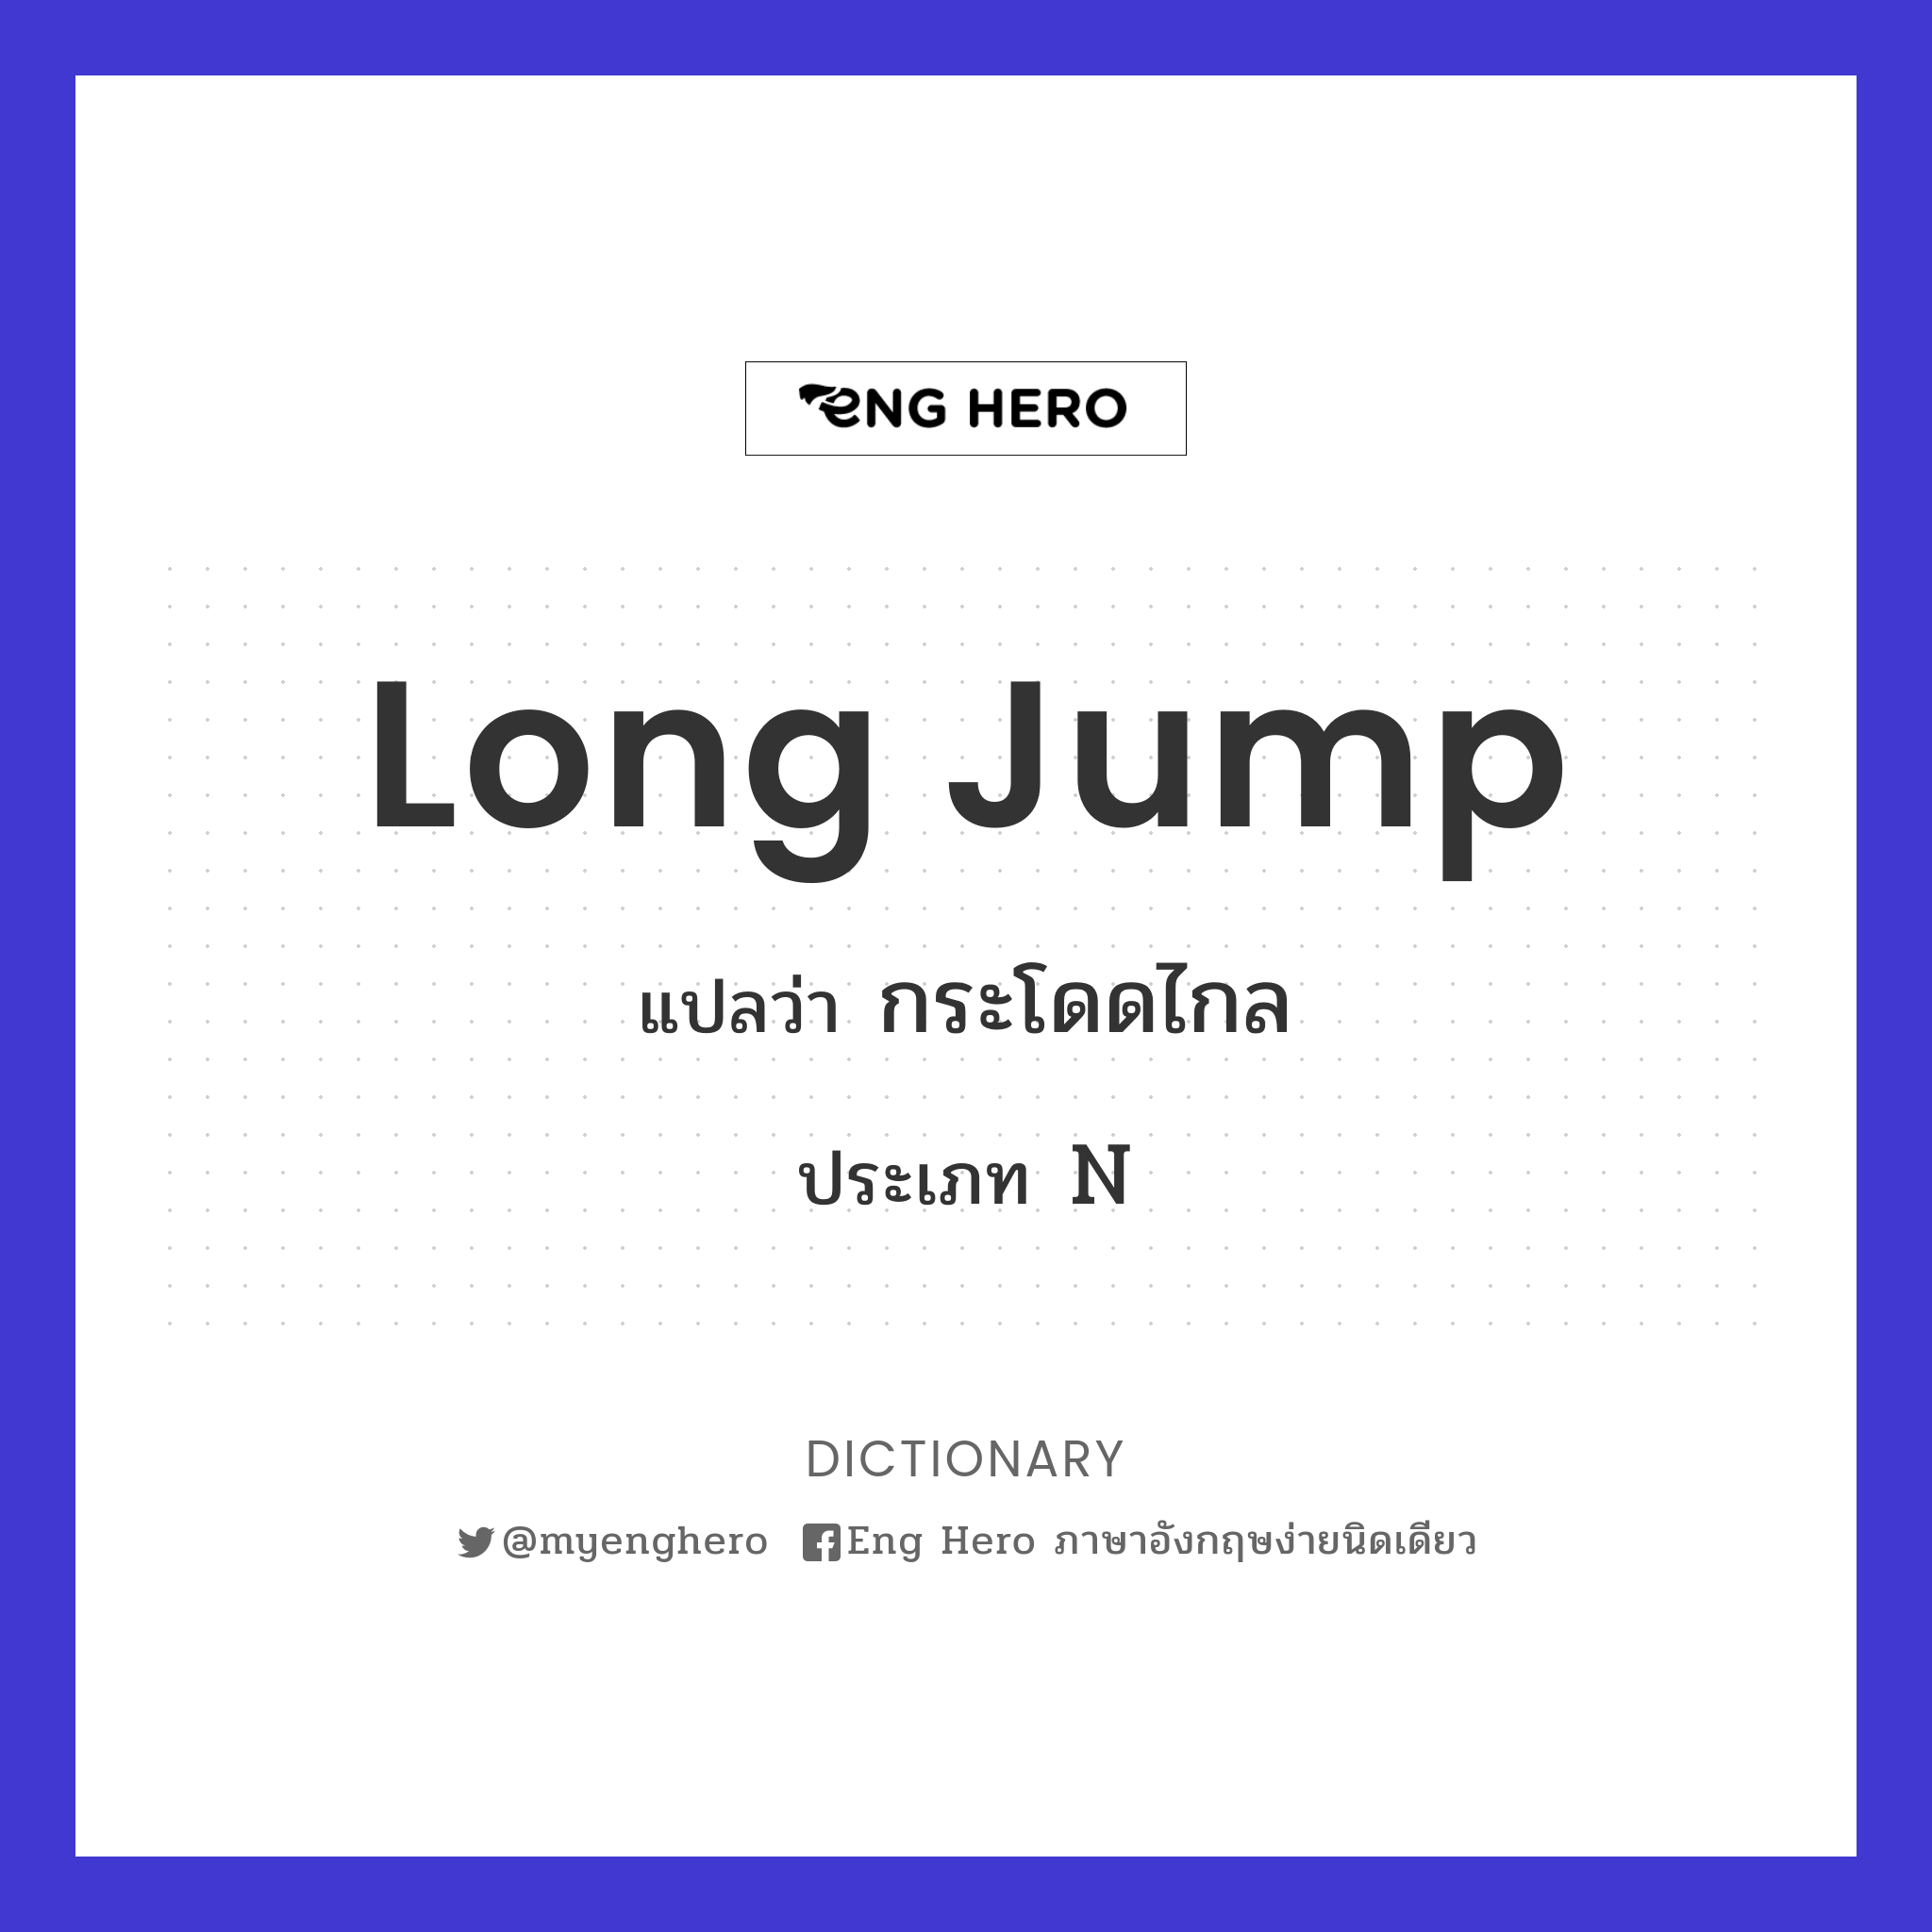 long jump